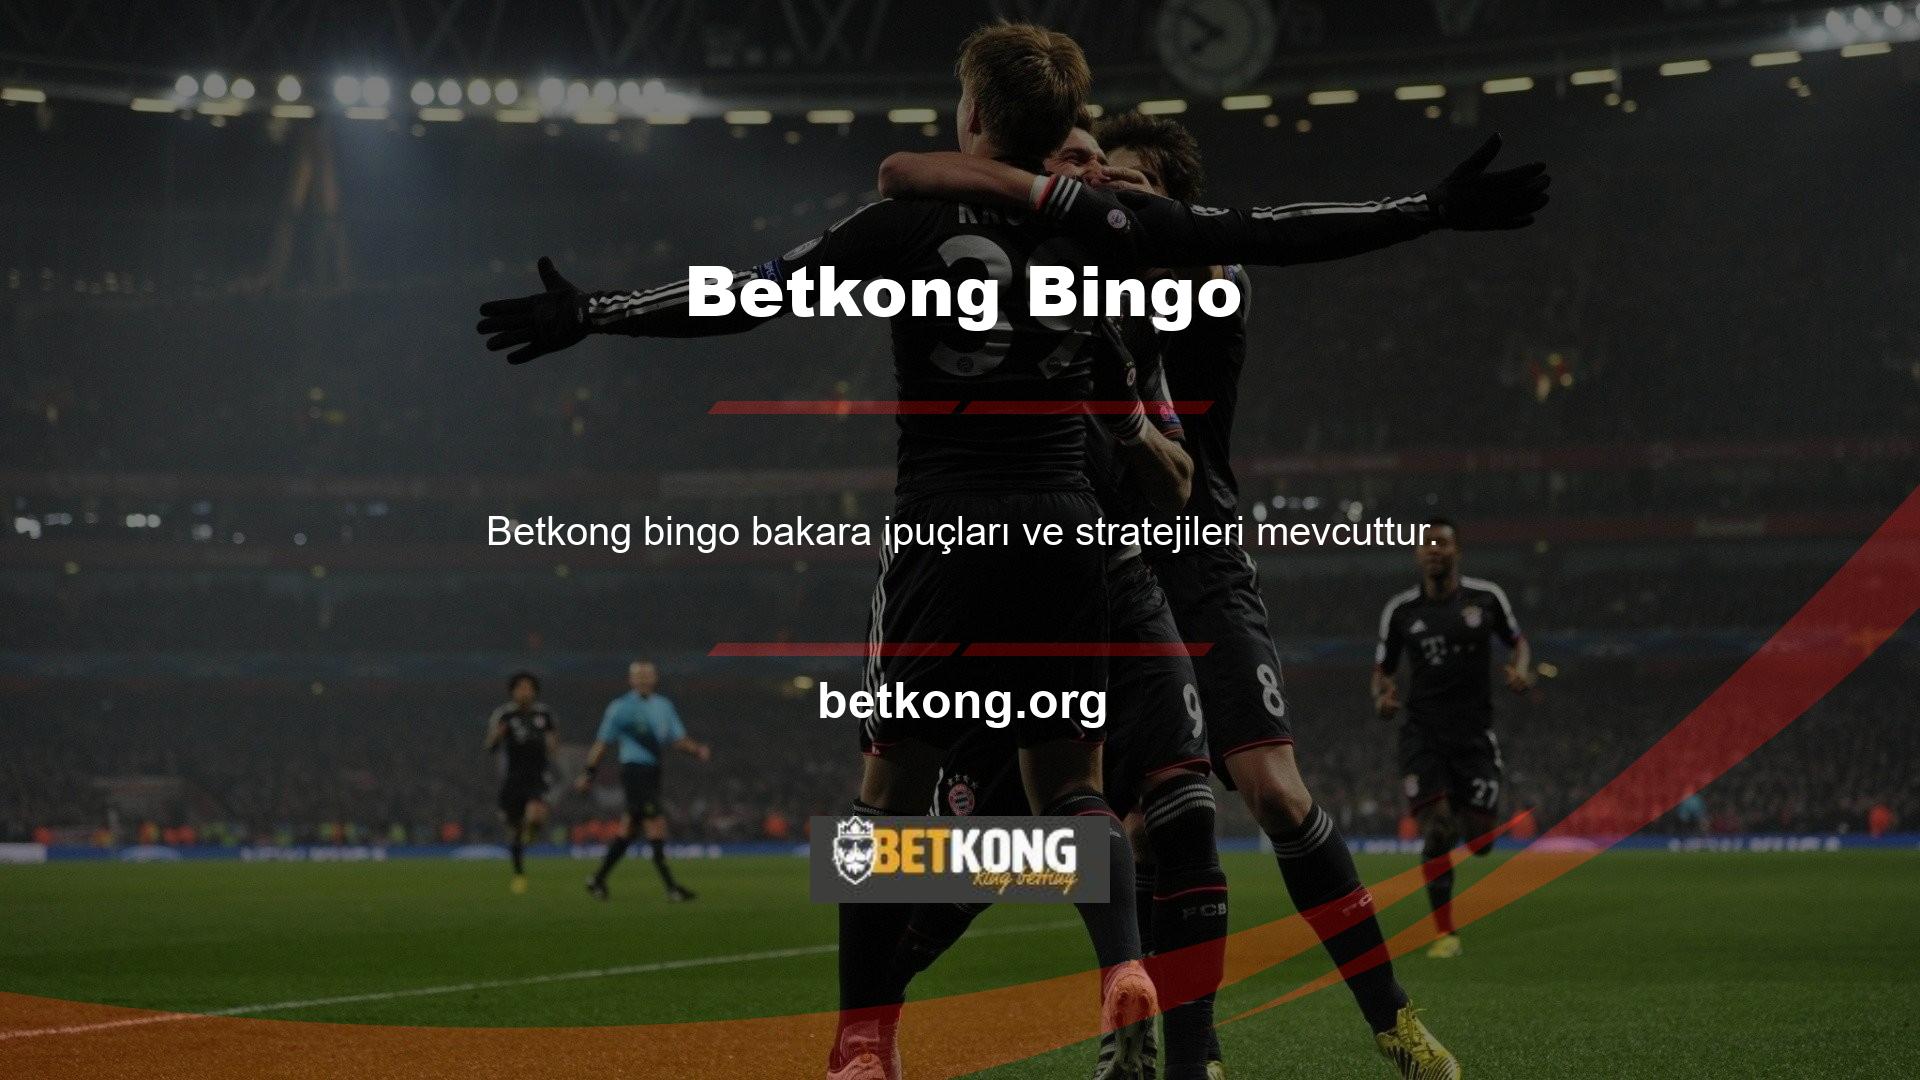 Betkong Bingo'nun nasıl oynanacağına dair talimatlar verebilir misiniz? Betkong bakaraya aşinadır ve bu da onu oynayabilecekleri az sayıdaki oyundan biri yapar